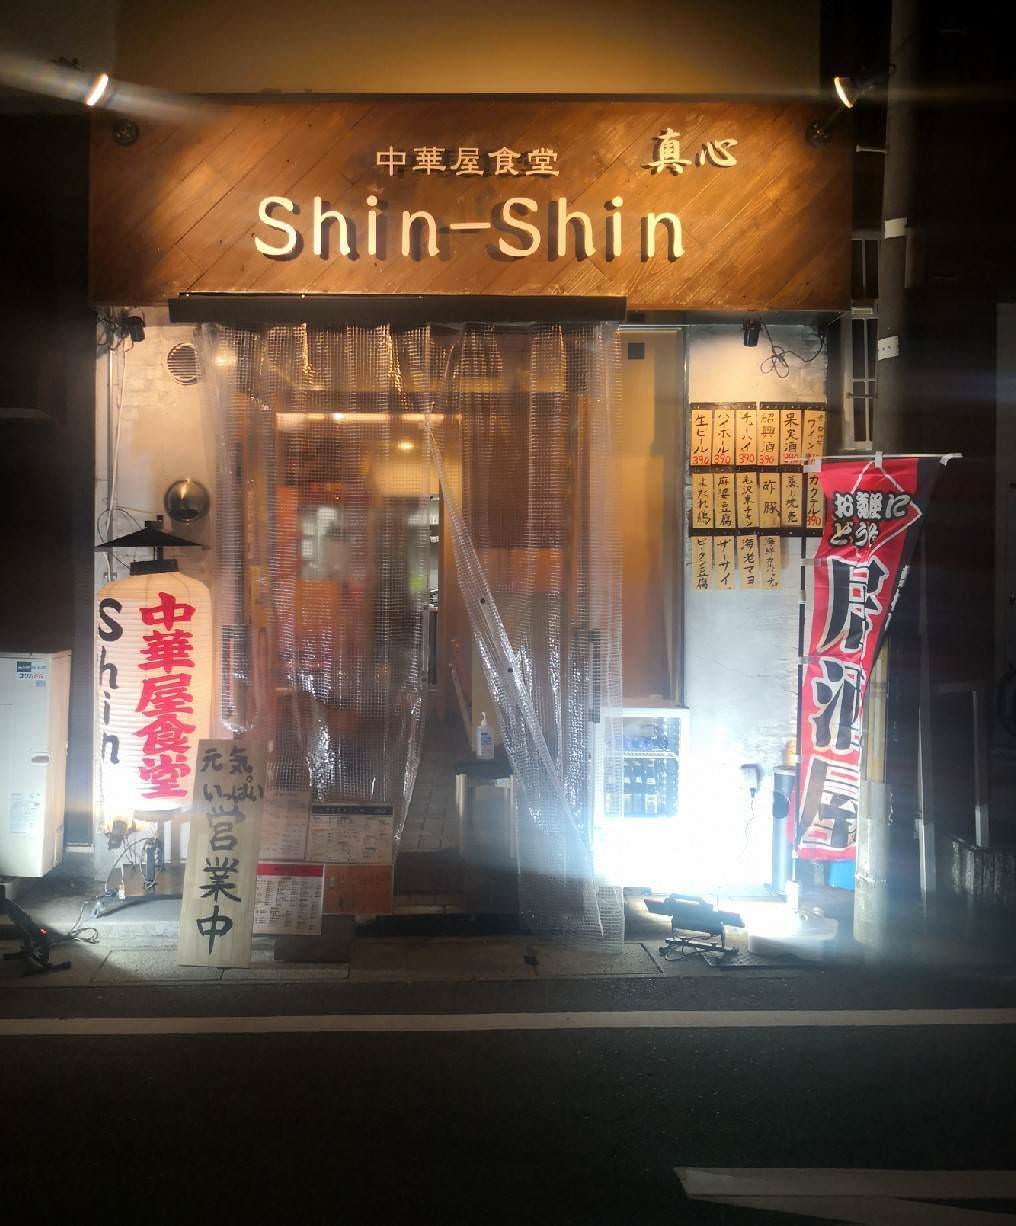 中华屋食堂shin Shin 照片 西宫 中餐 Gurunavi 日本美食餐厅指南